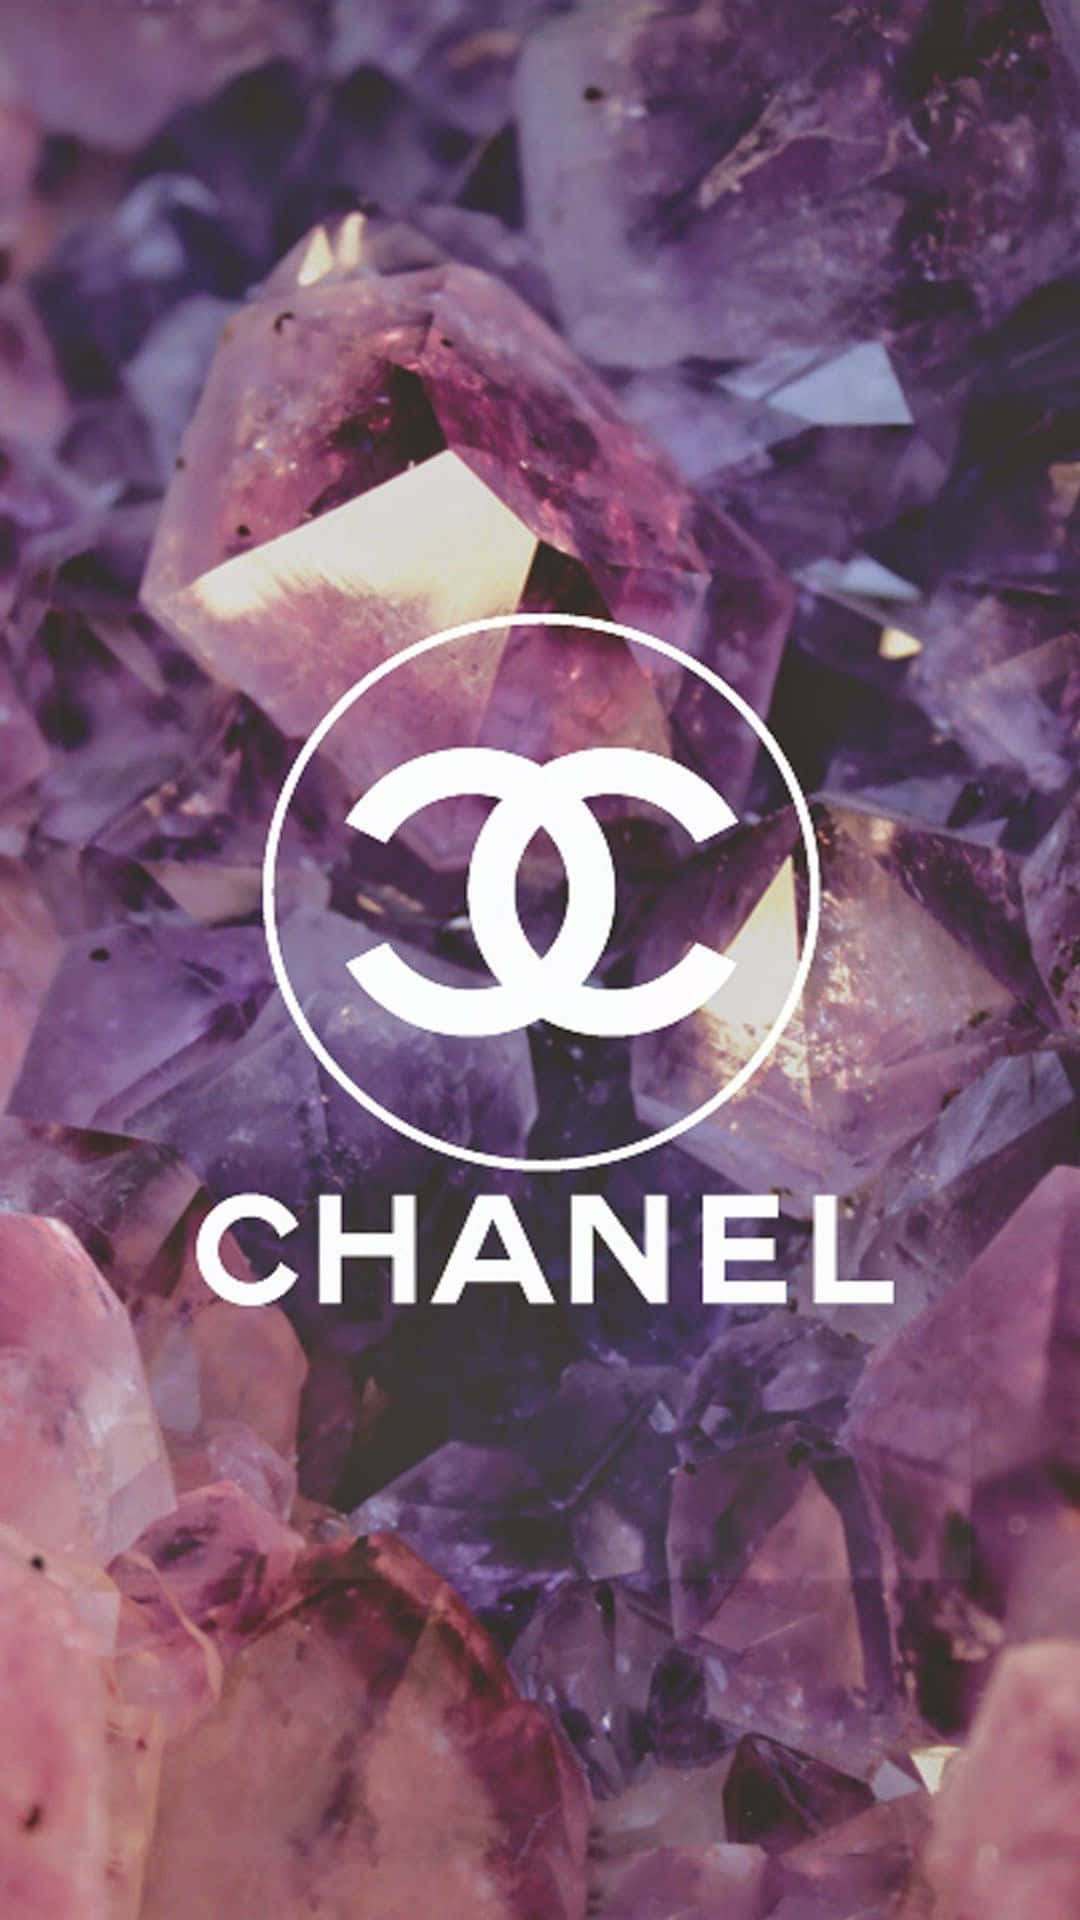 Dasikonische Chanel-logo